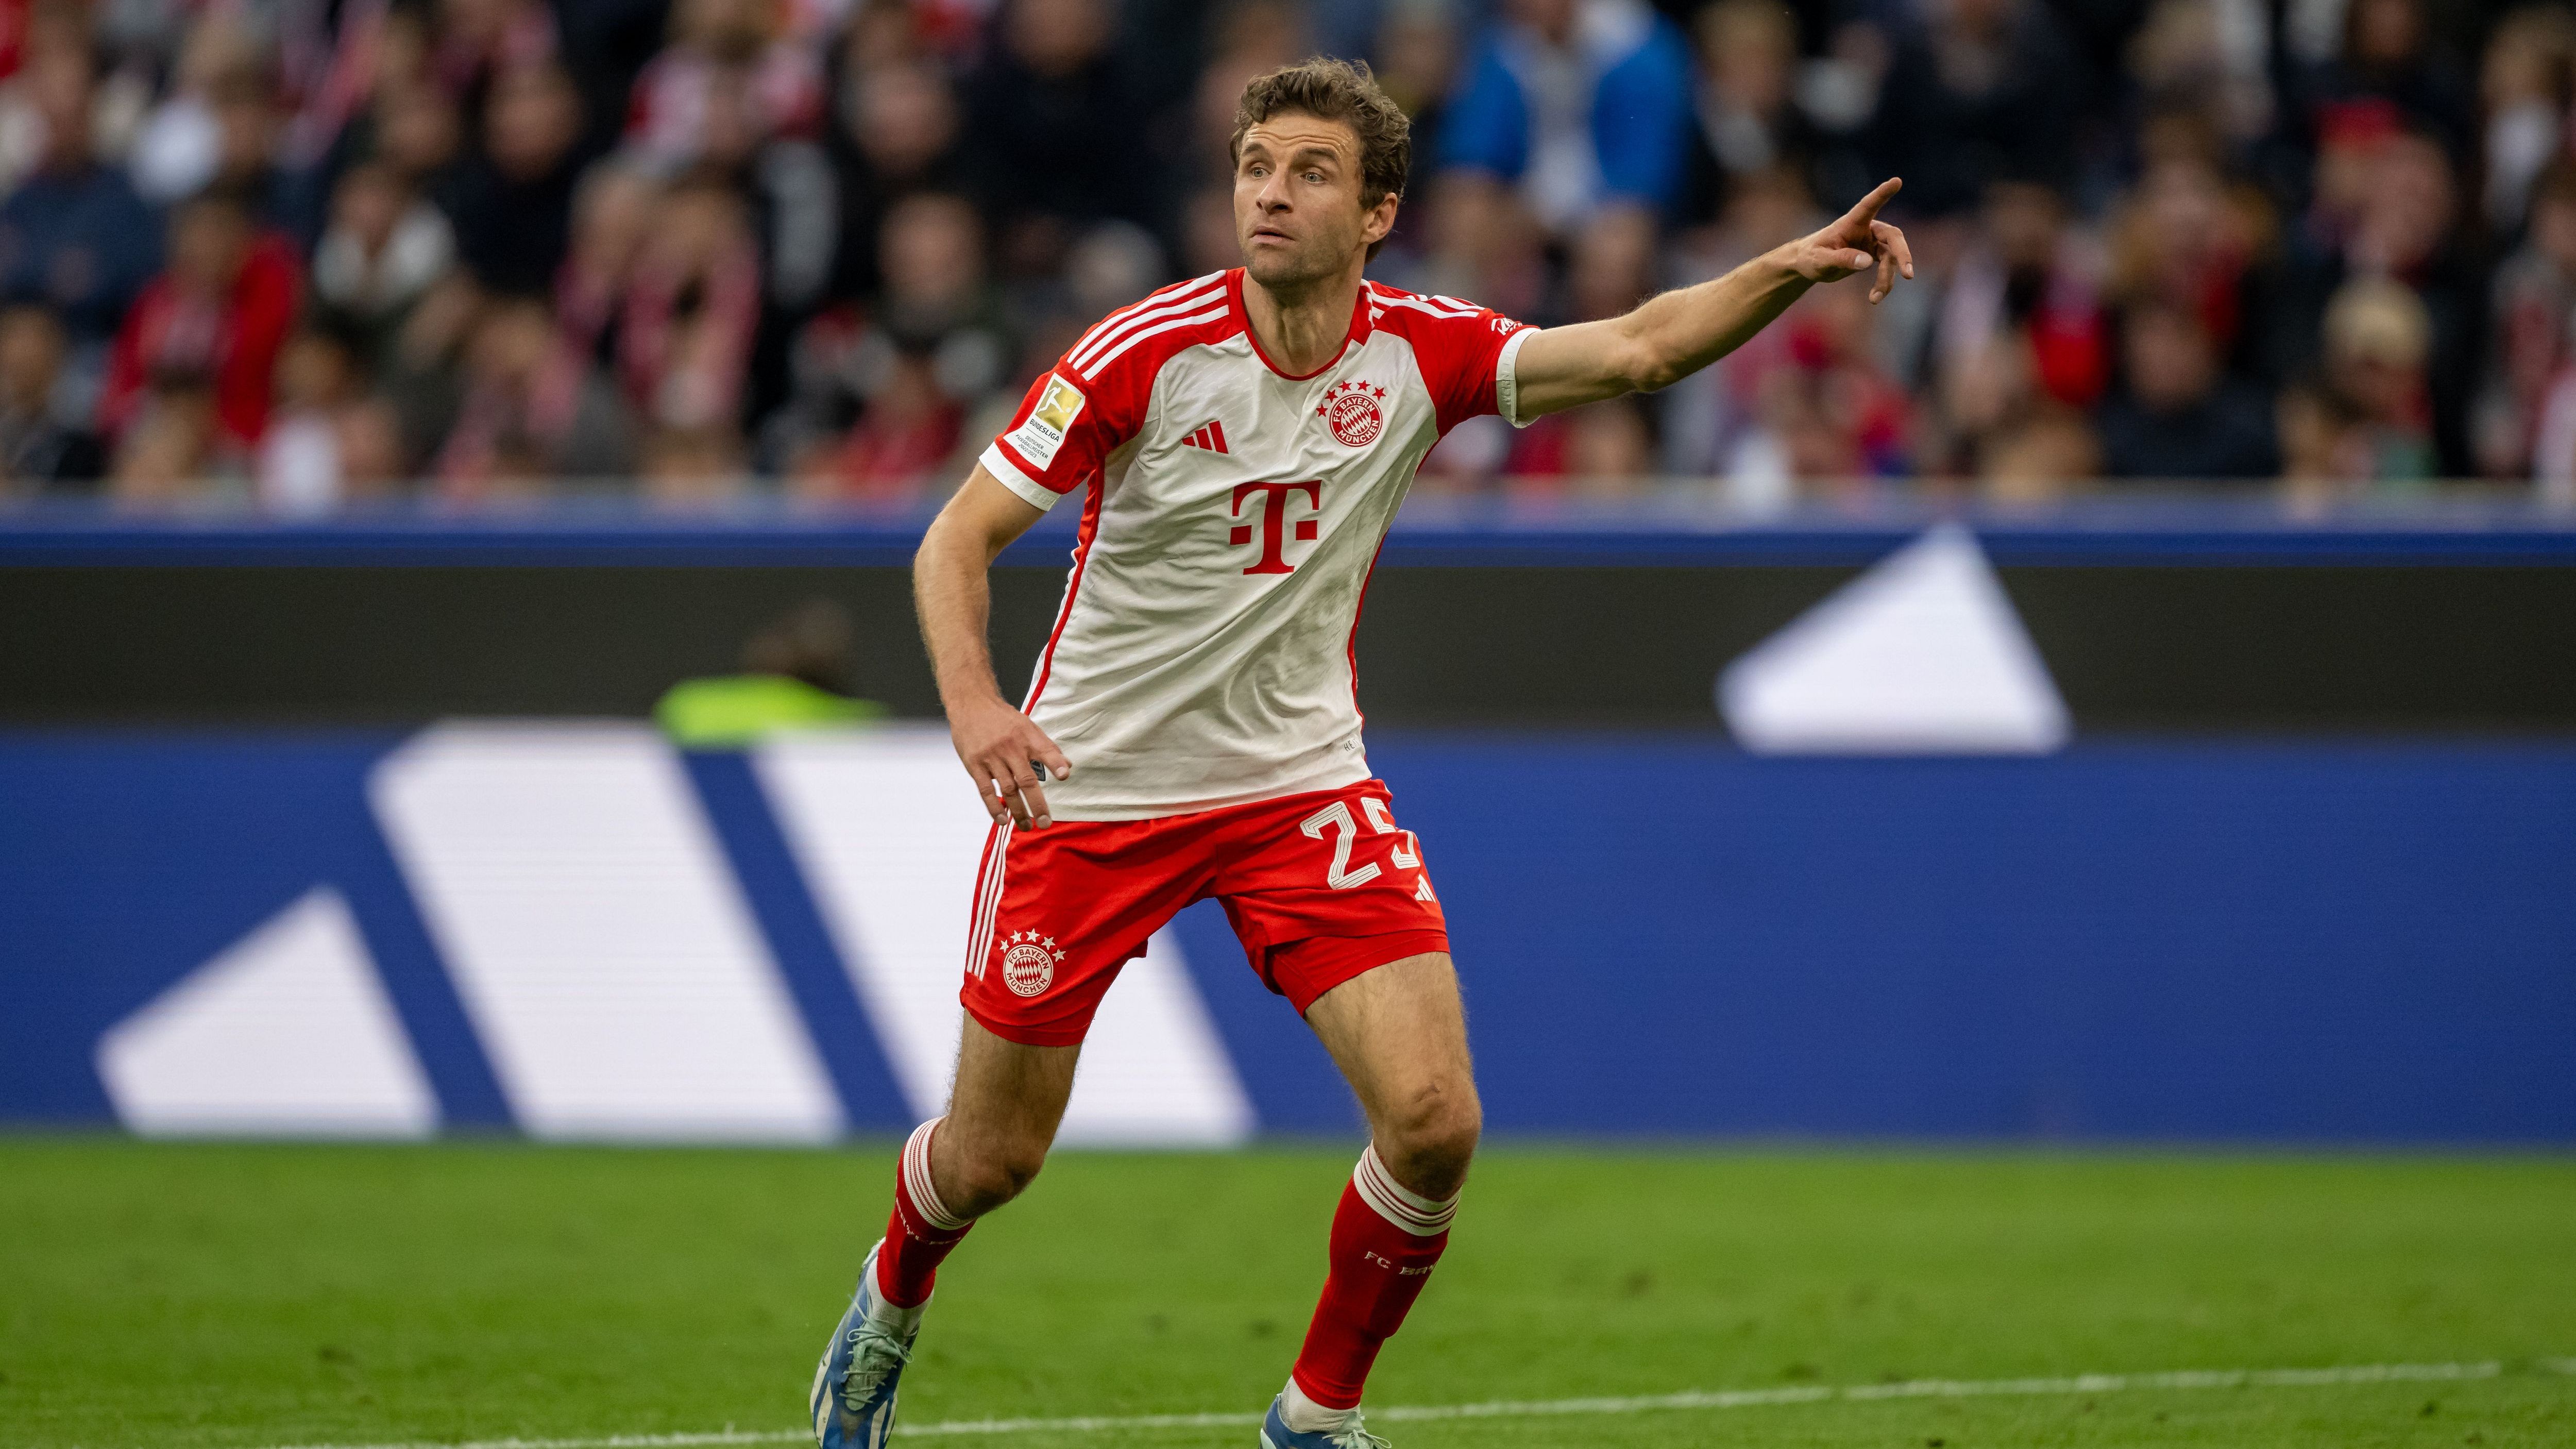 <strong>Offensives Mittelfeld: Thomas Müller</strong><br>Gegen Saarbrücken erzielte er den einzigen bayerischen Treffer und zeigte auch nach Abpfiff im Umgang mit den Fans, wie wichtig er noch für die Münchner ist. Vor allem hat er jede Menge Topspiel-Erfahrung.